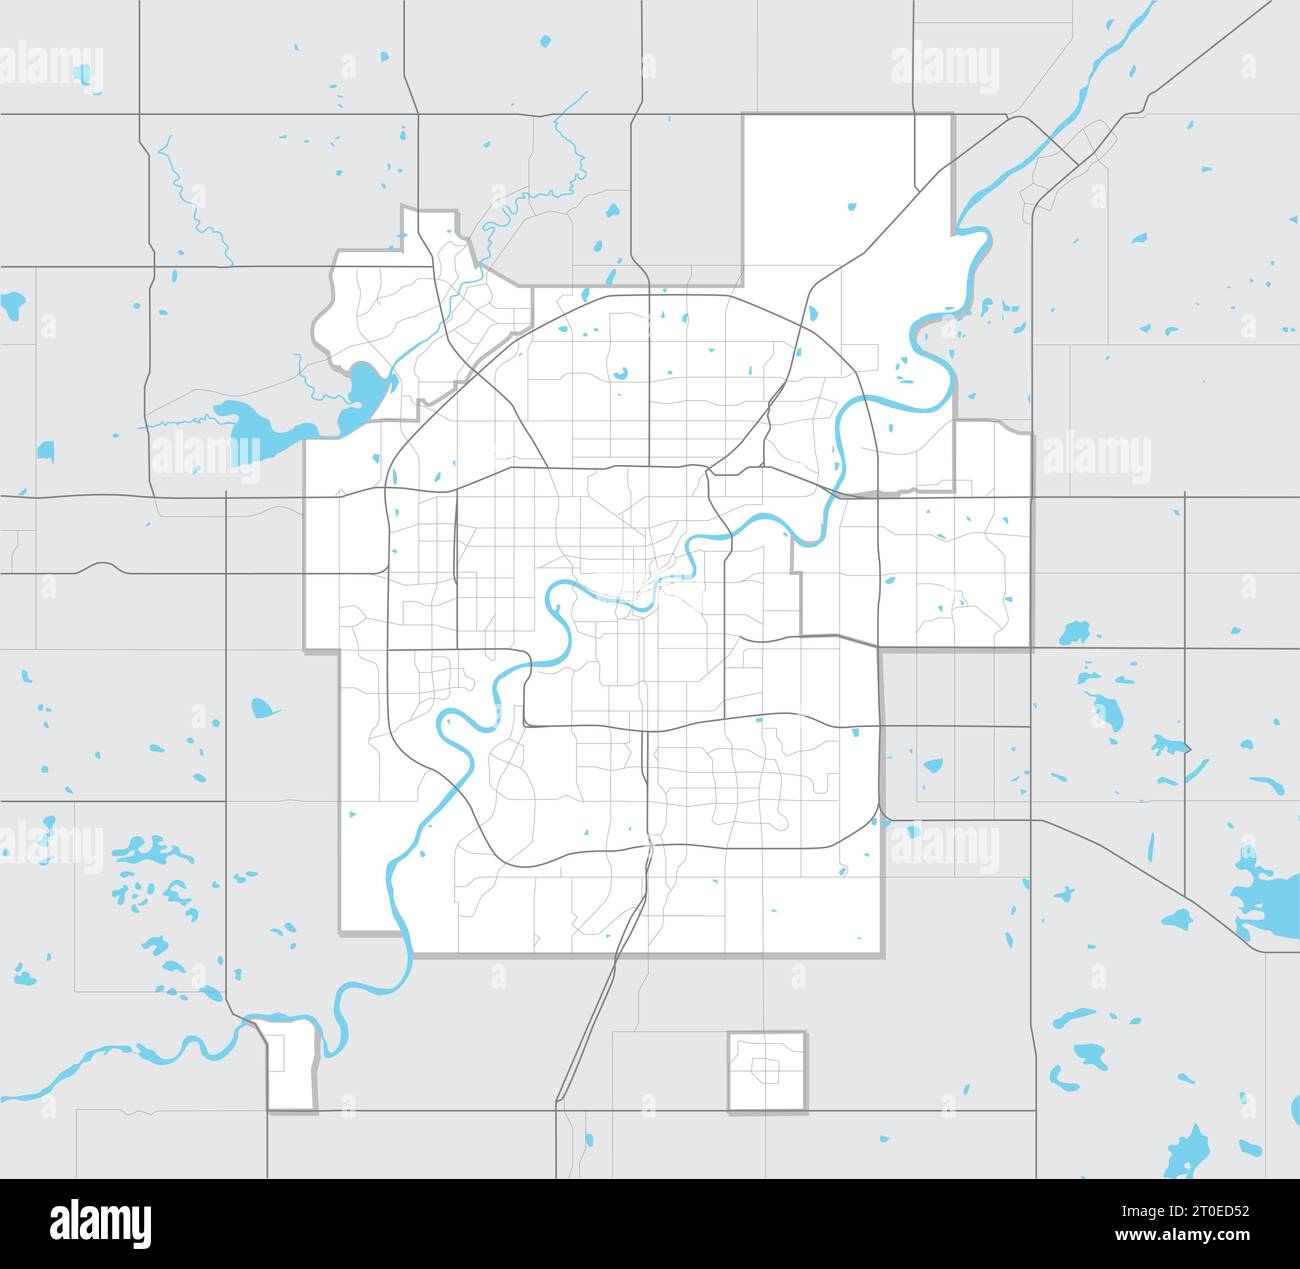 Carte simple d'Edmonton Alberta, Canada. Carte touristique de la région métropolitaine d'Edmonton avec routes, rues, rivières et lacs et contours de la région. Illustration de Vecteur